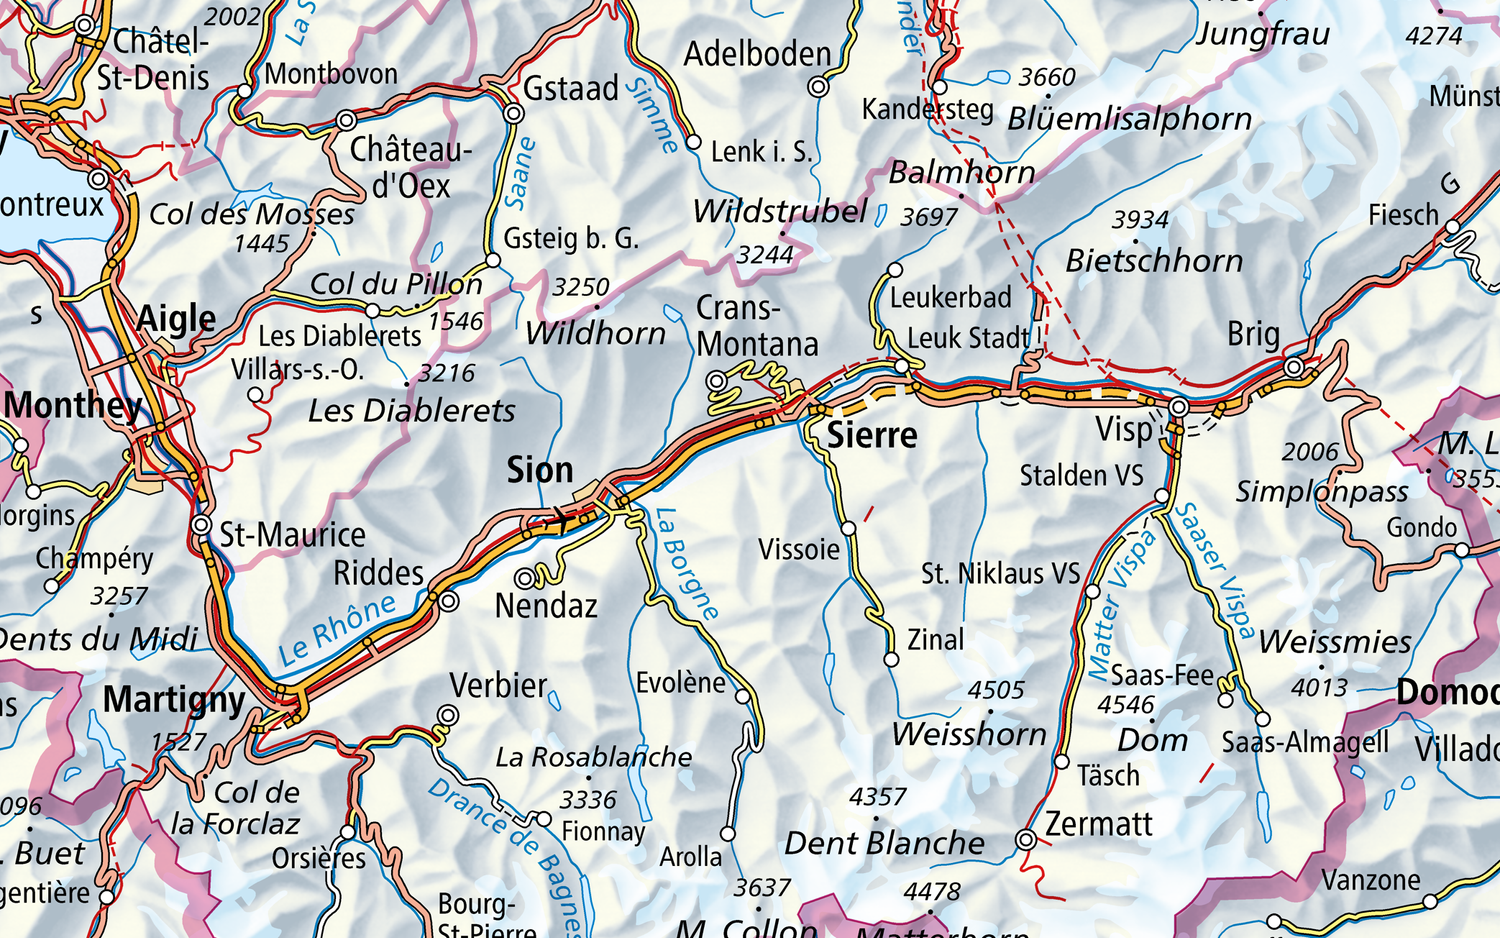 L'immagine mostra una sezione della Swiss Map Raster 1000 della Valle del Rodano (VS) da Martigny a Fiesch. 